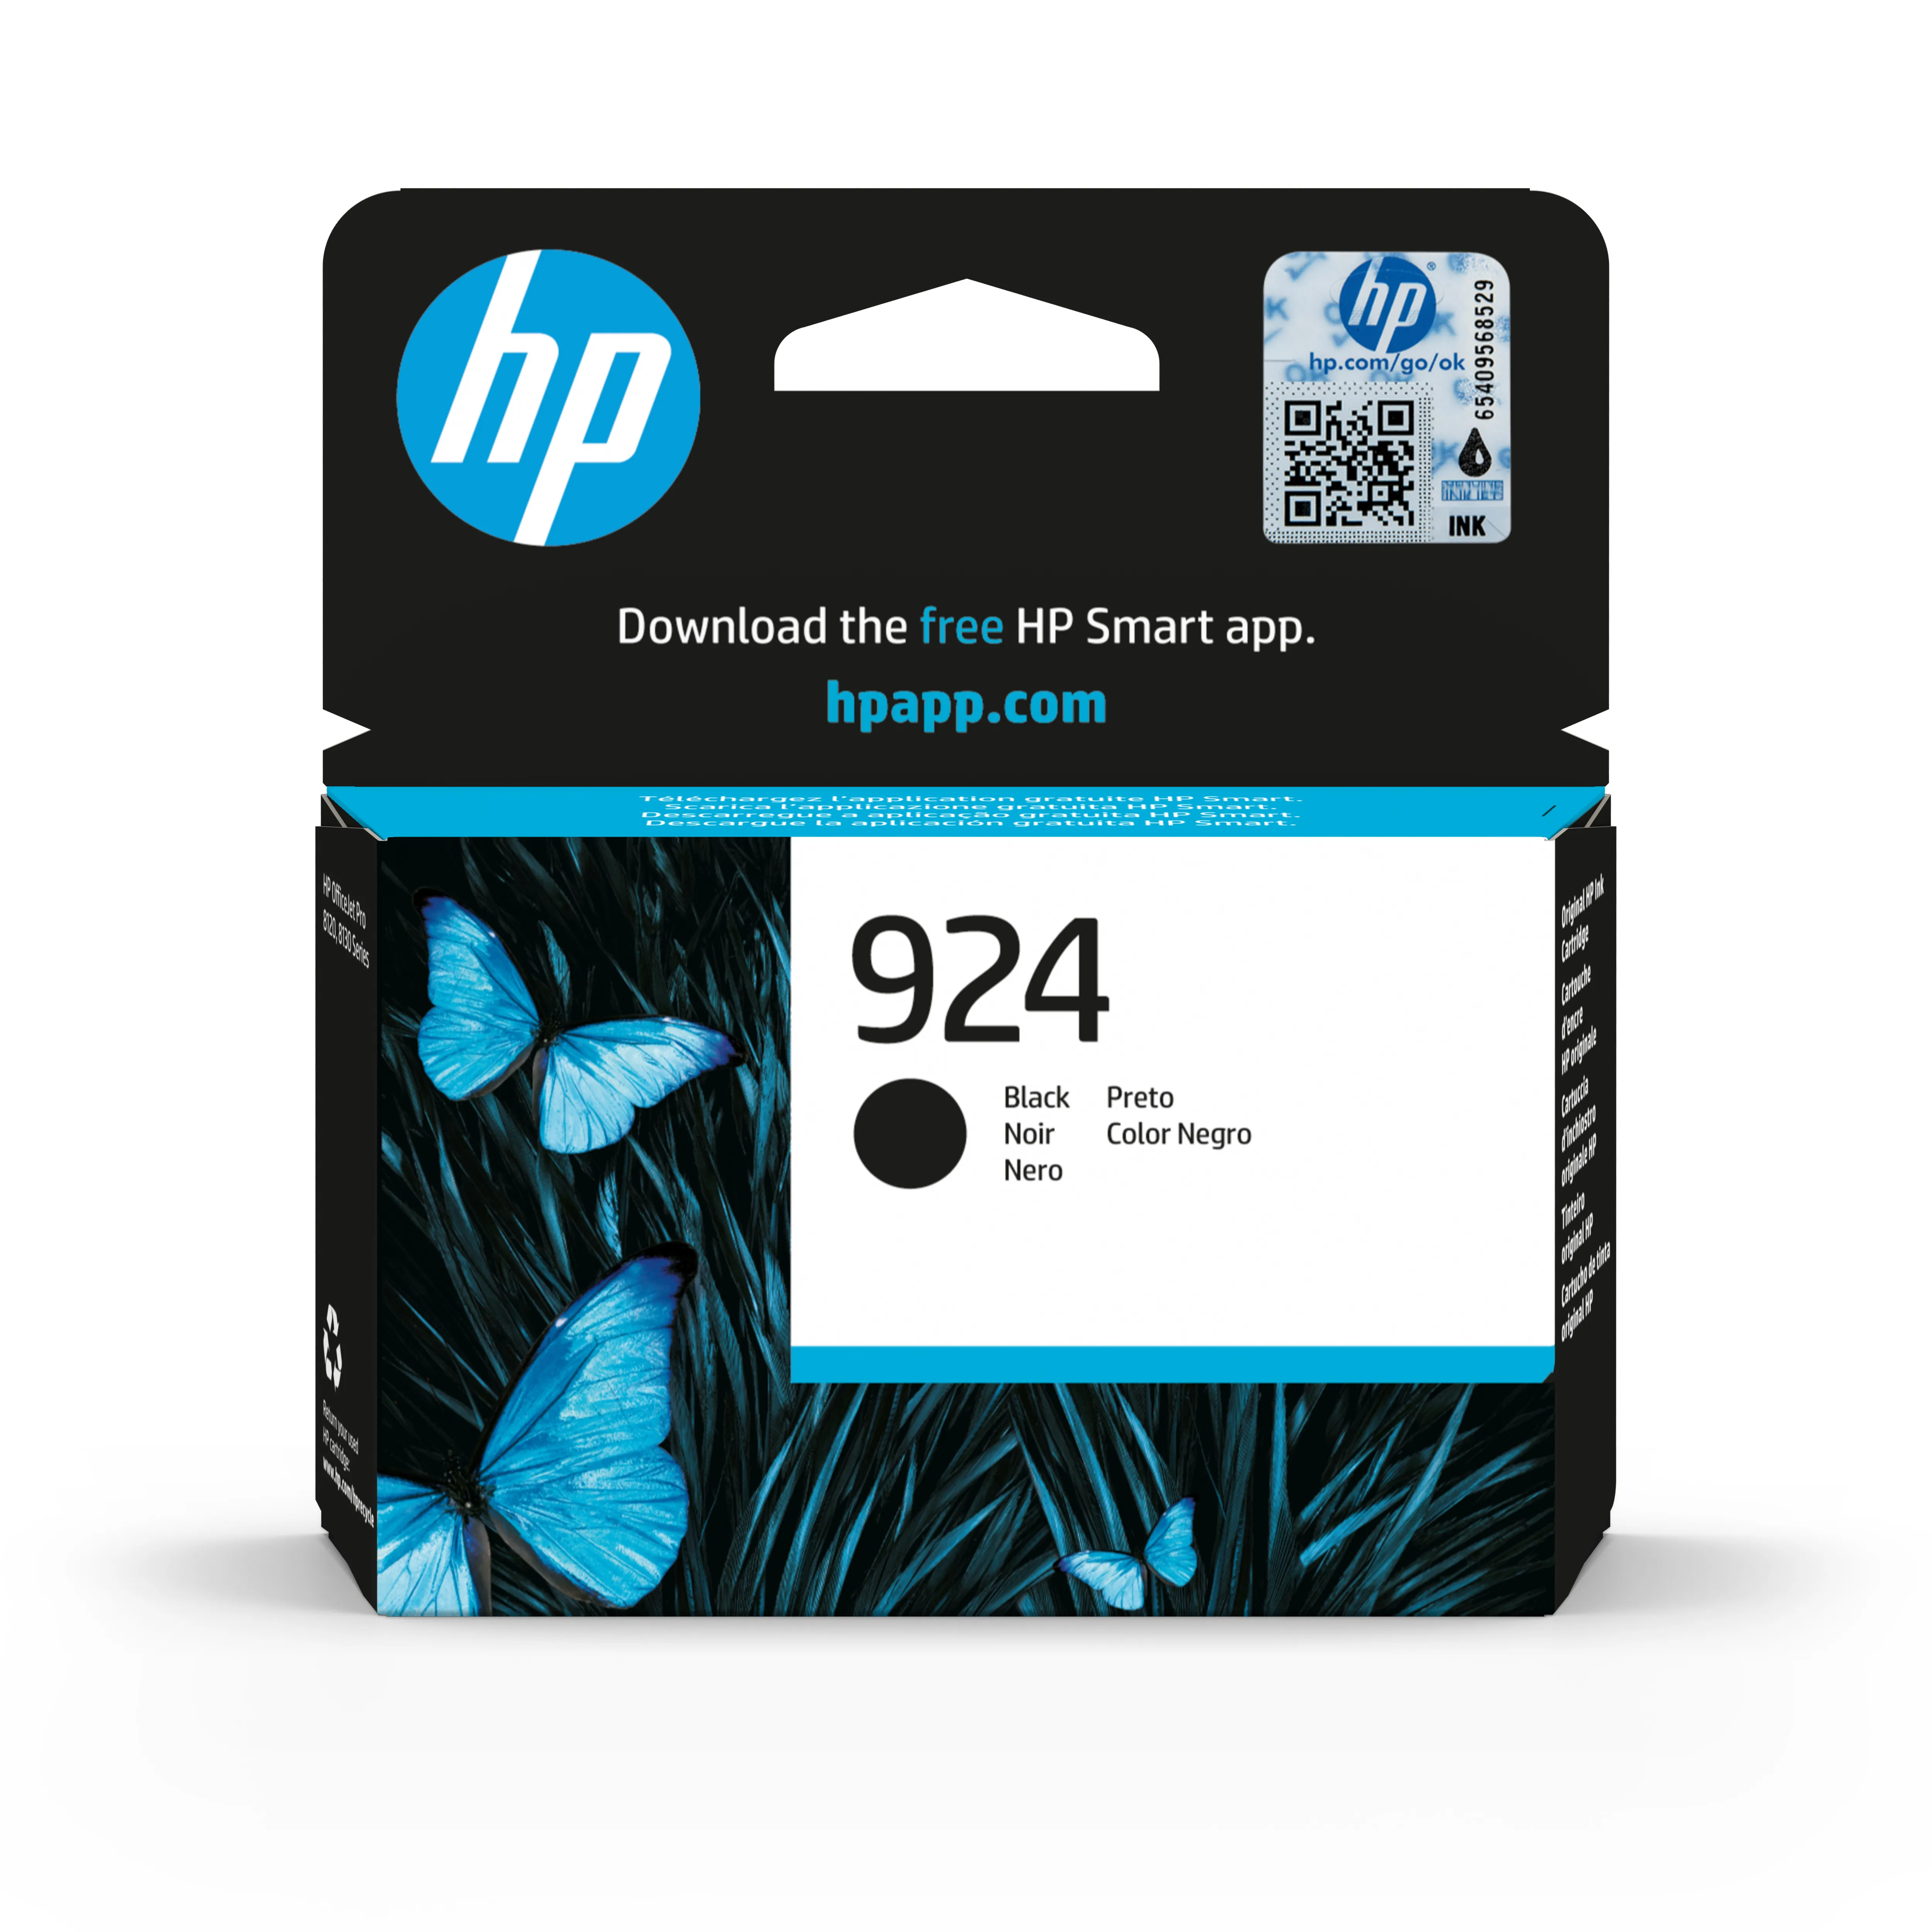 Vente HP 924 Black Original Ink Cartridge au meilleur prix